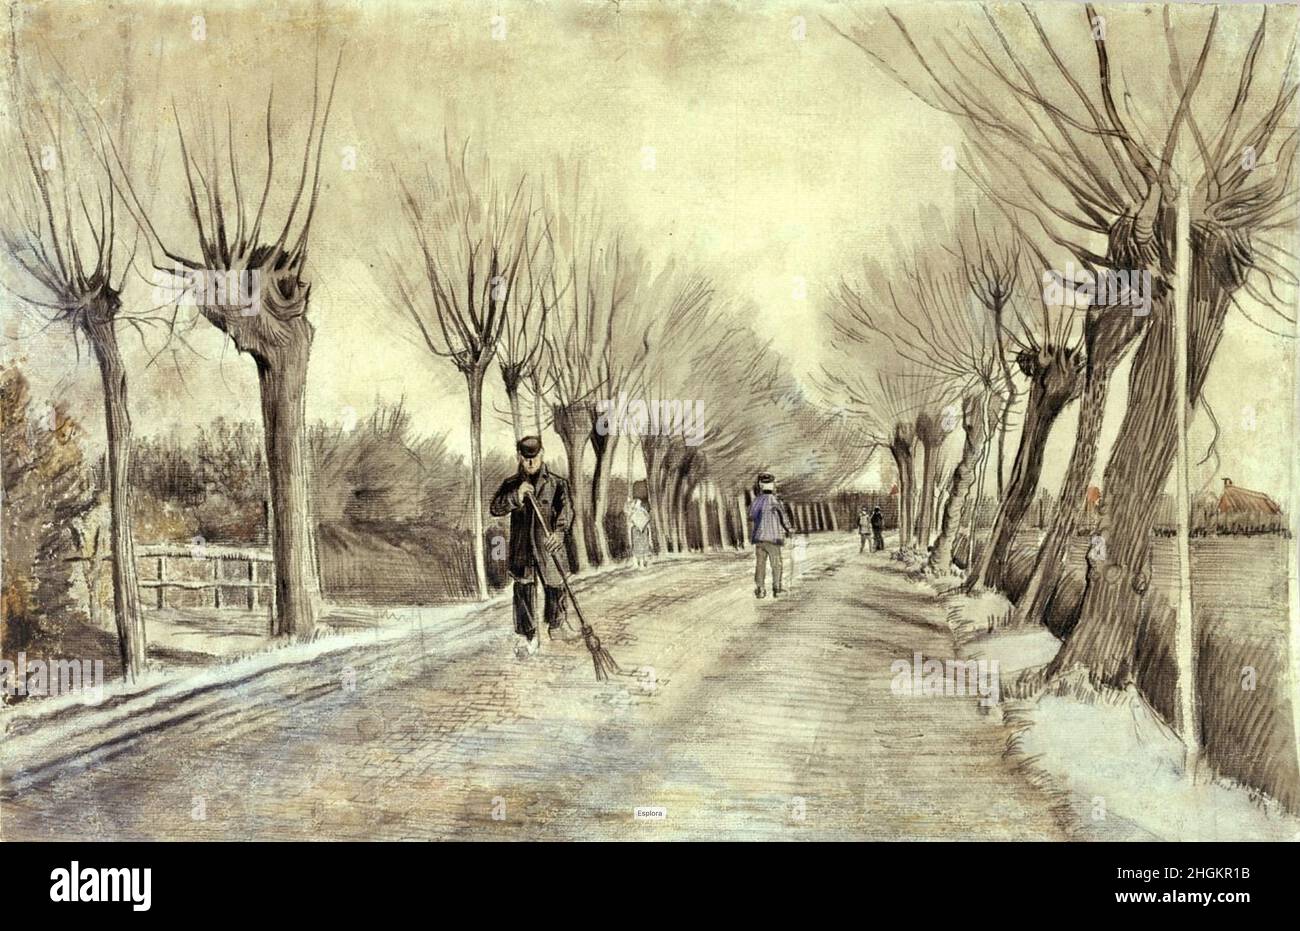 Route de l'Etten - 1881 - acquerello, gessetto, pastelli, matita e penna sur carta 39,4 x 57,8 cm - Van Gogh Vincent Banque D'Images